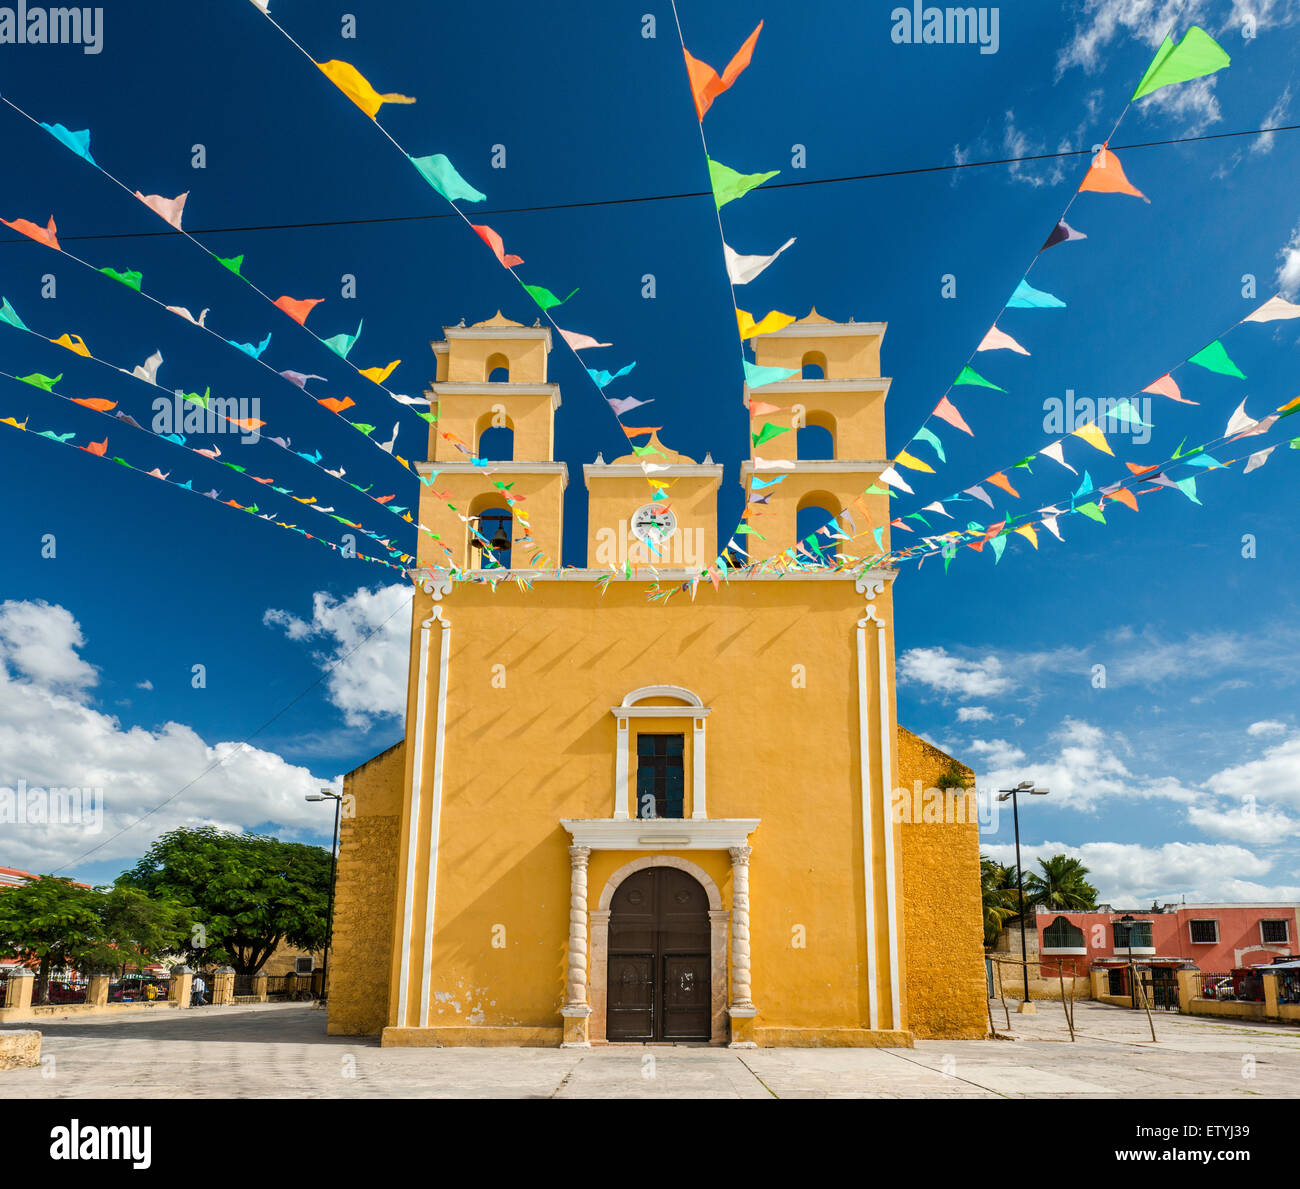 Iglesia de Nuestra Senora de la Natividad, decorated with pennants, in Acanceh, Yucatan state, Mexico Stock Photo